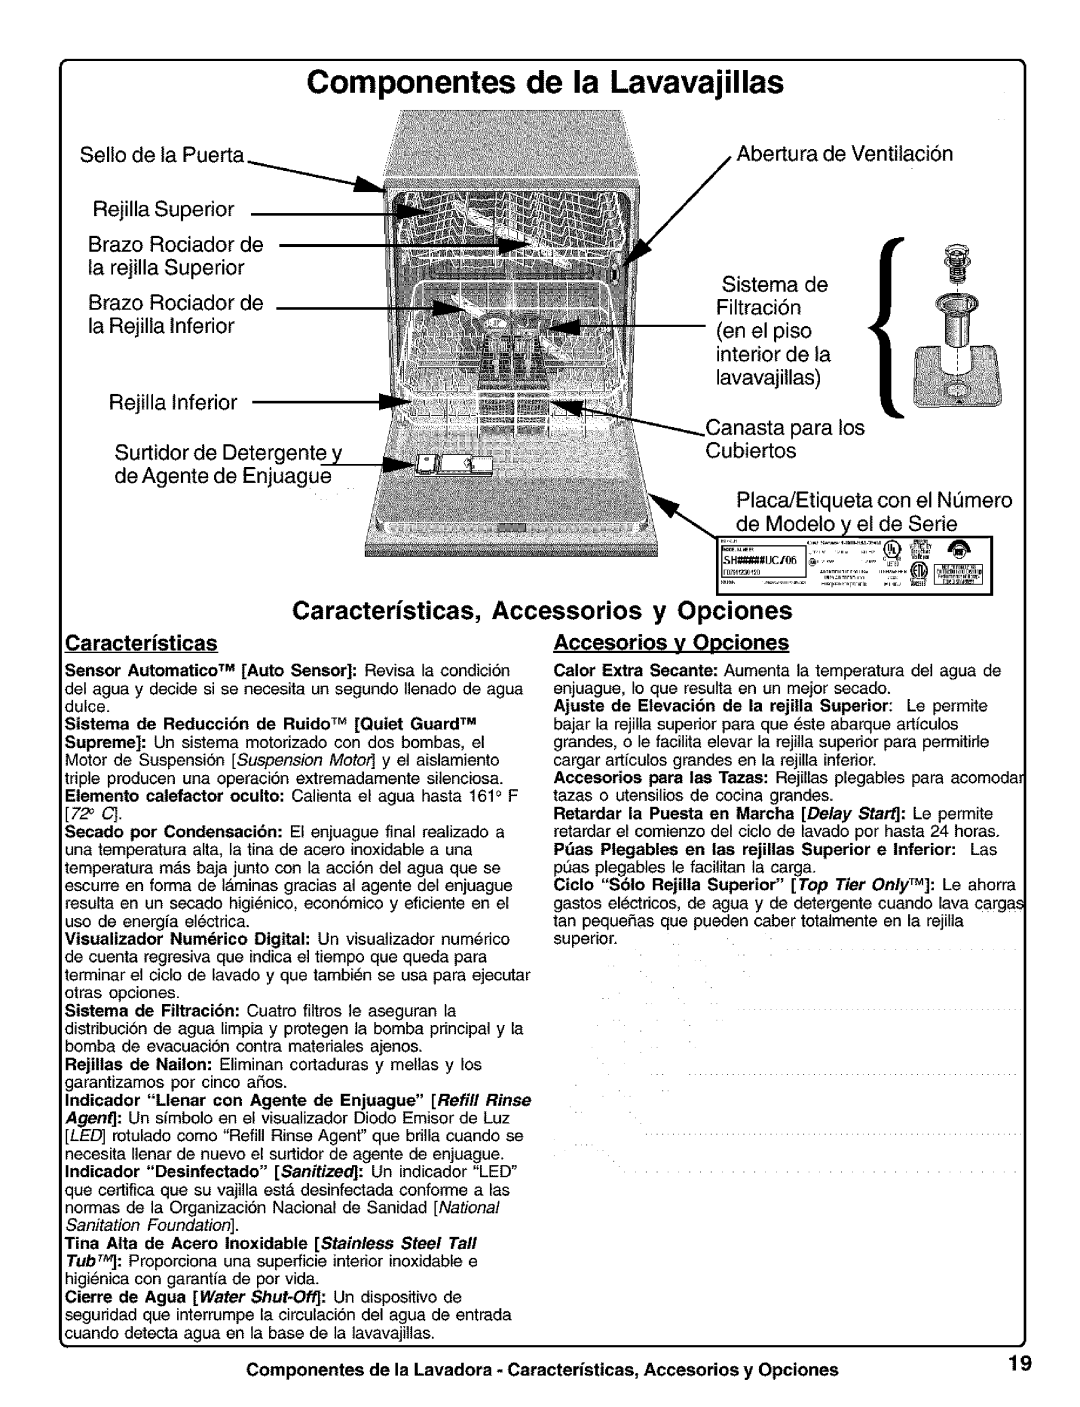 Kenmore 630.1730, 630.1630 manual Componentes de la Lavavajillas, Caracteristicas, Accessorios, Opciones 